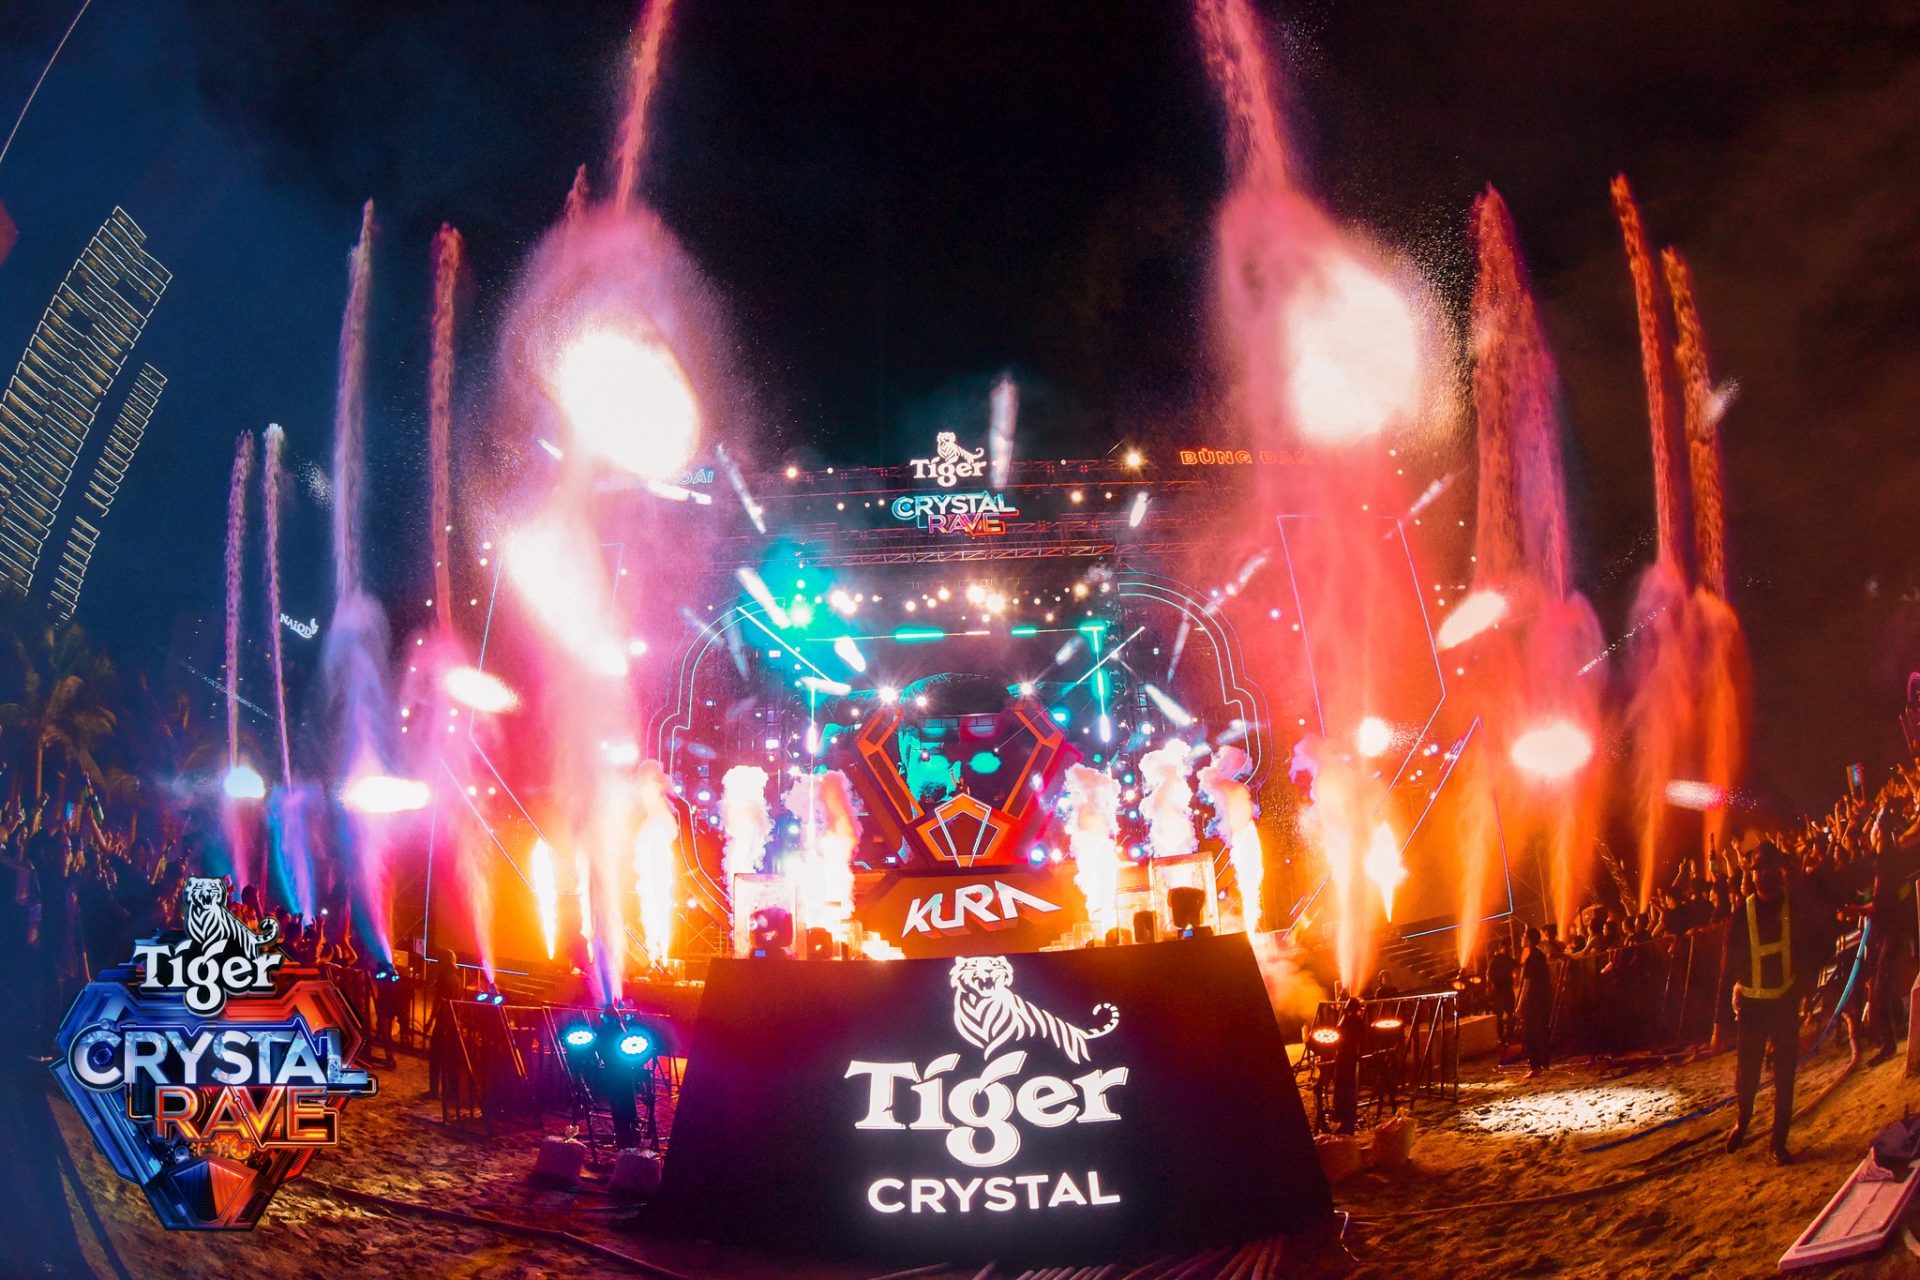 Nhạc nước Tiger Crystal Rave là trải nghiệm Water EDM Festival đẳng cấp quốc tế tại Việt Nam